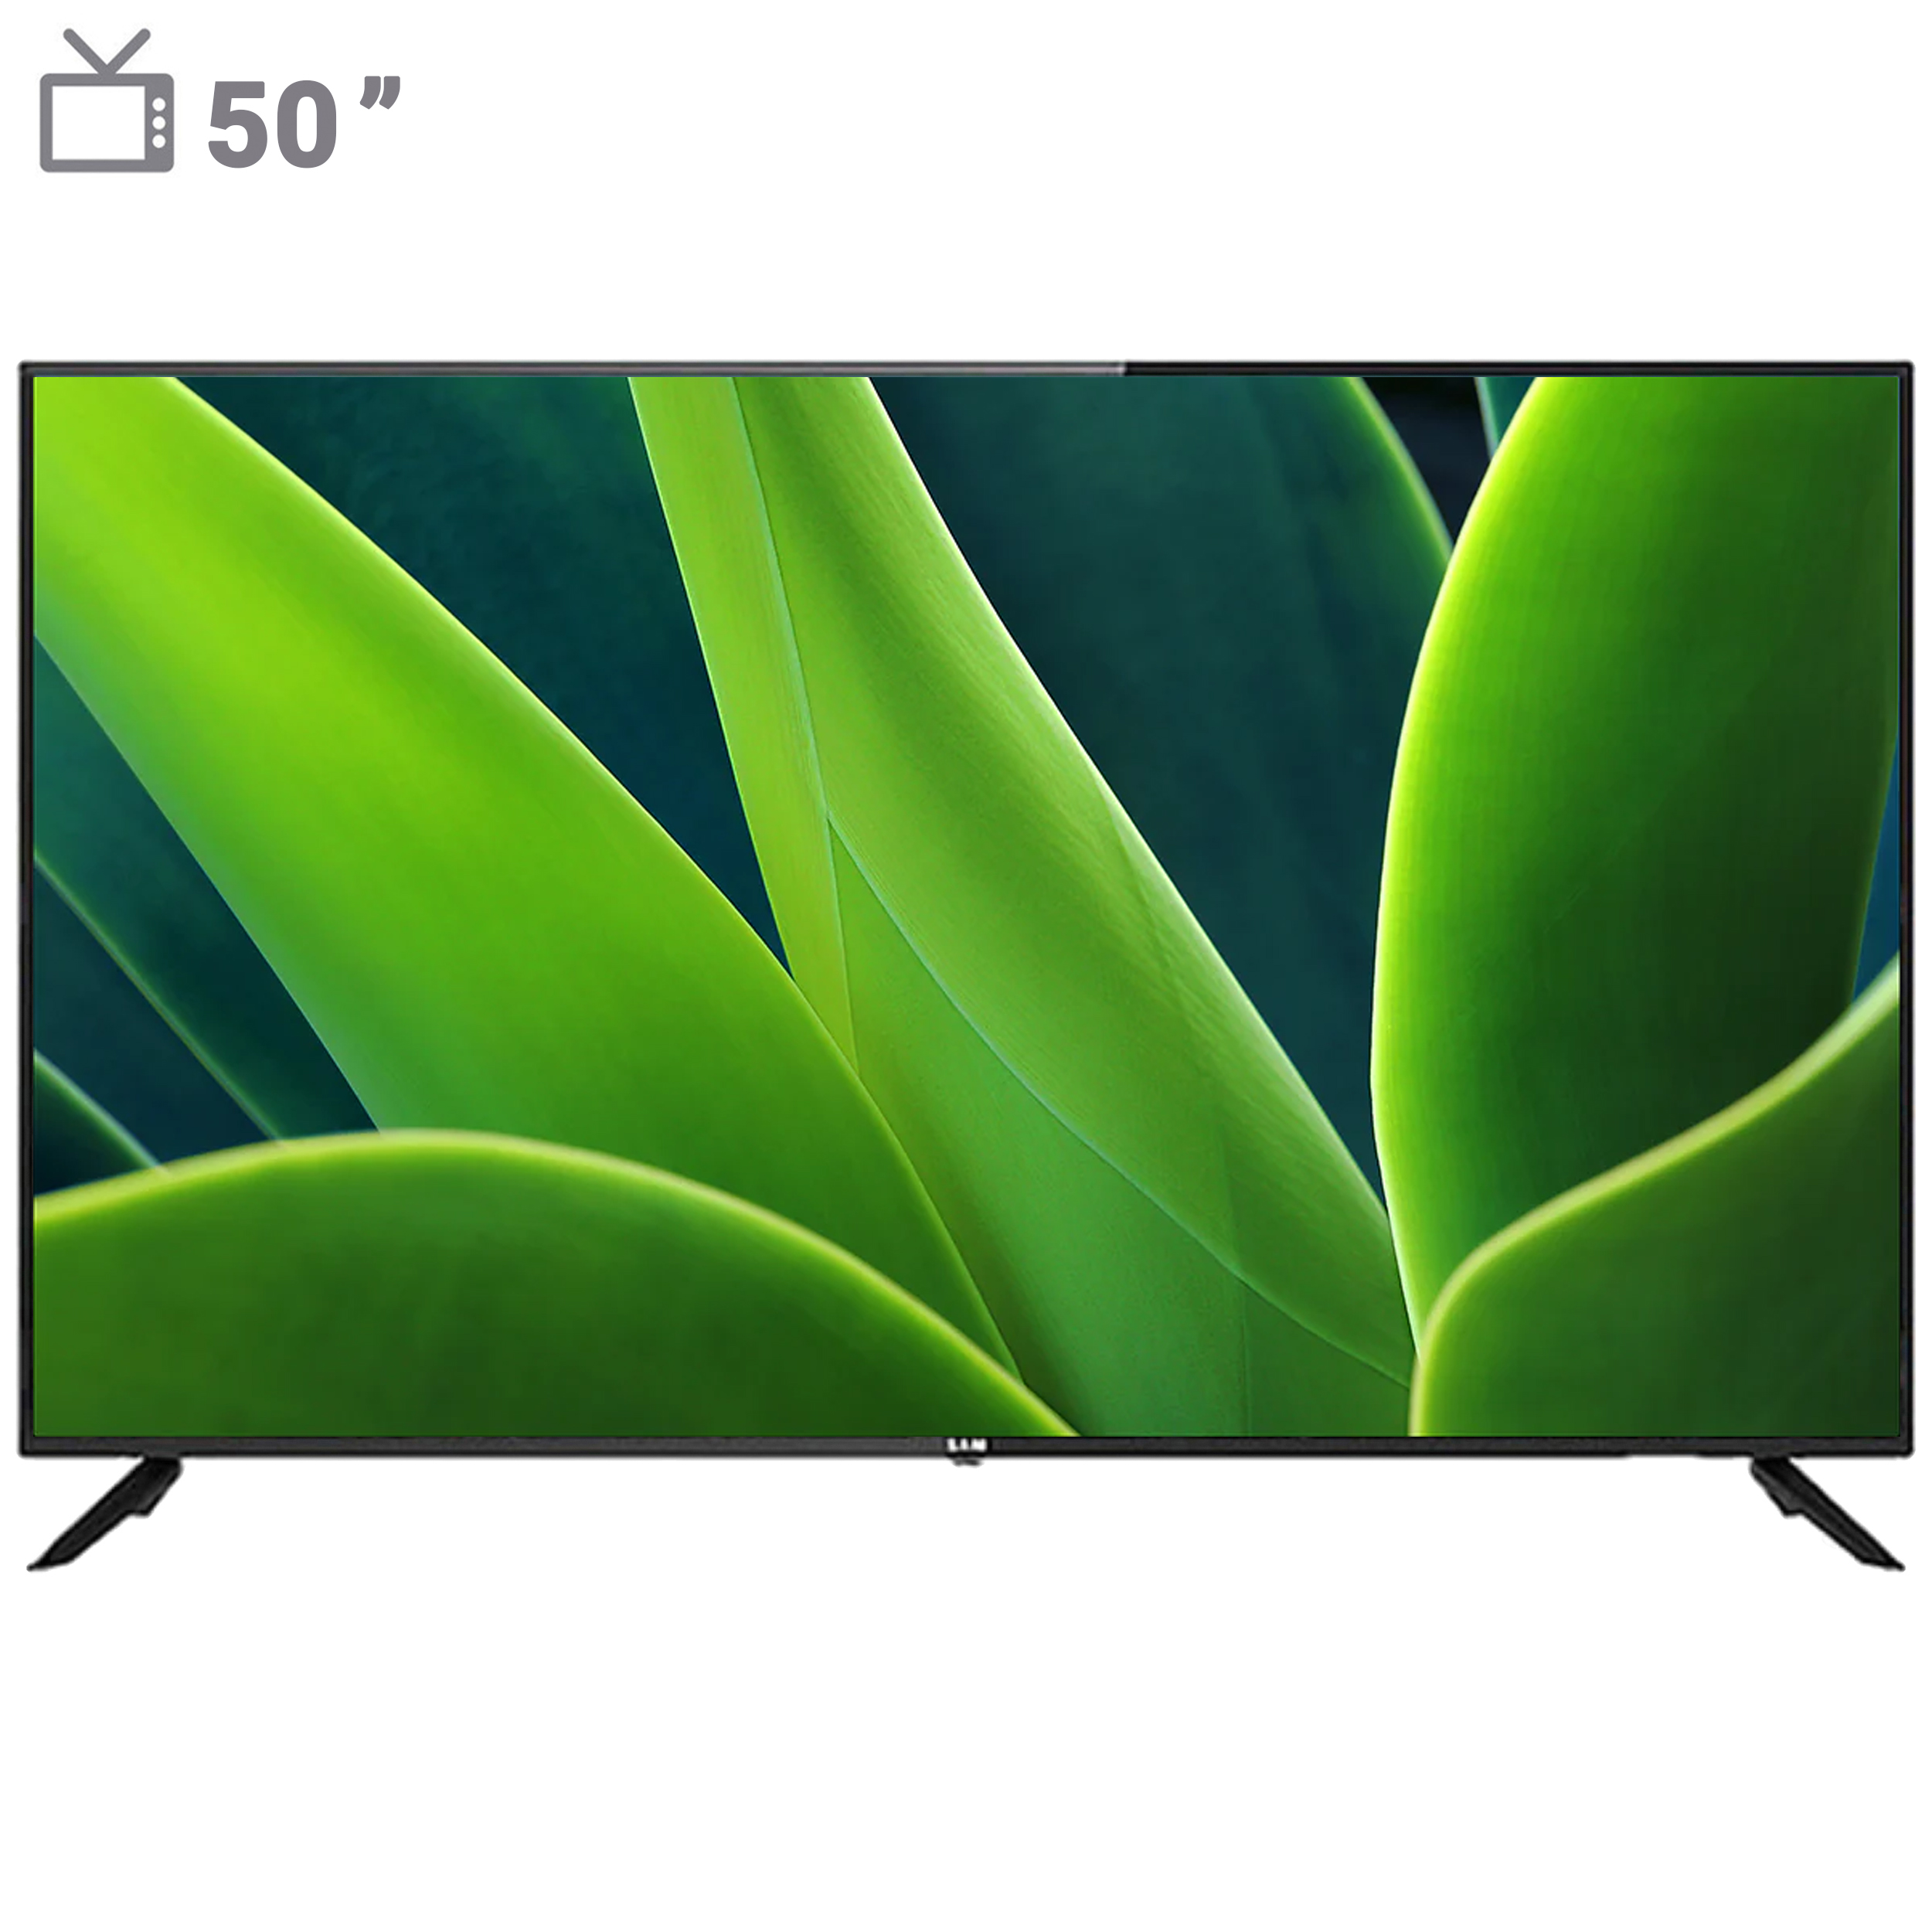 نکته خرید - قیمت روز تلویزیون هوشمند ال ای دی سام مدل UA50TU7550TH سایز 50 اینچ خرید